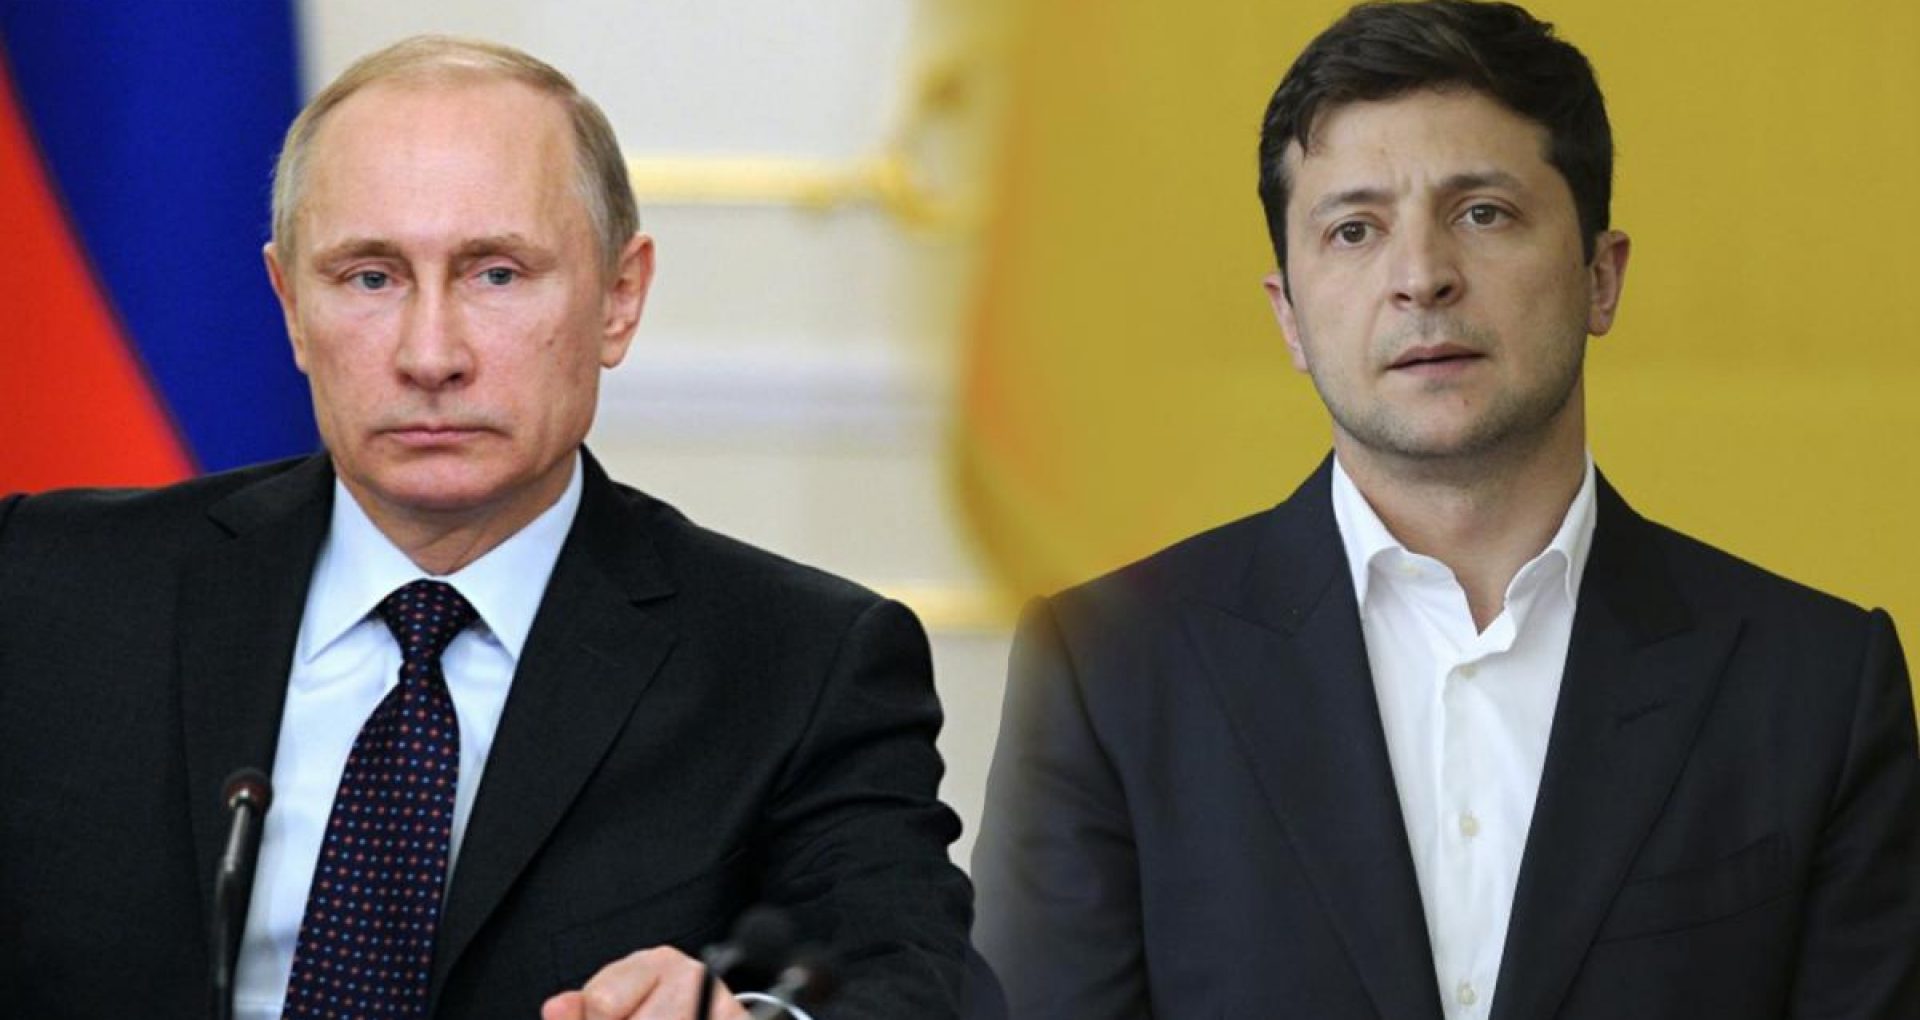 Disputa dintre Ucraina și Rusia privind aurul din Crimeea atinge următorul nivel – Deutsche Welle